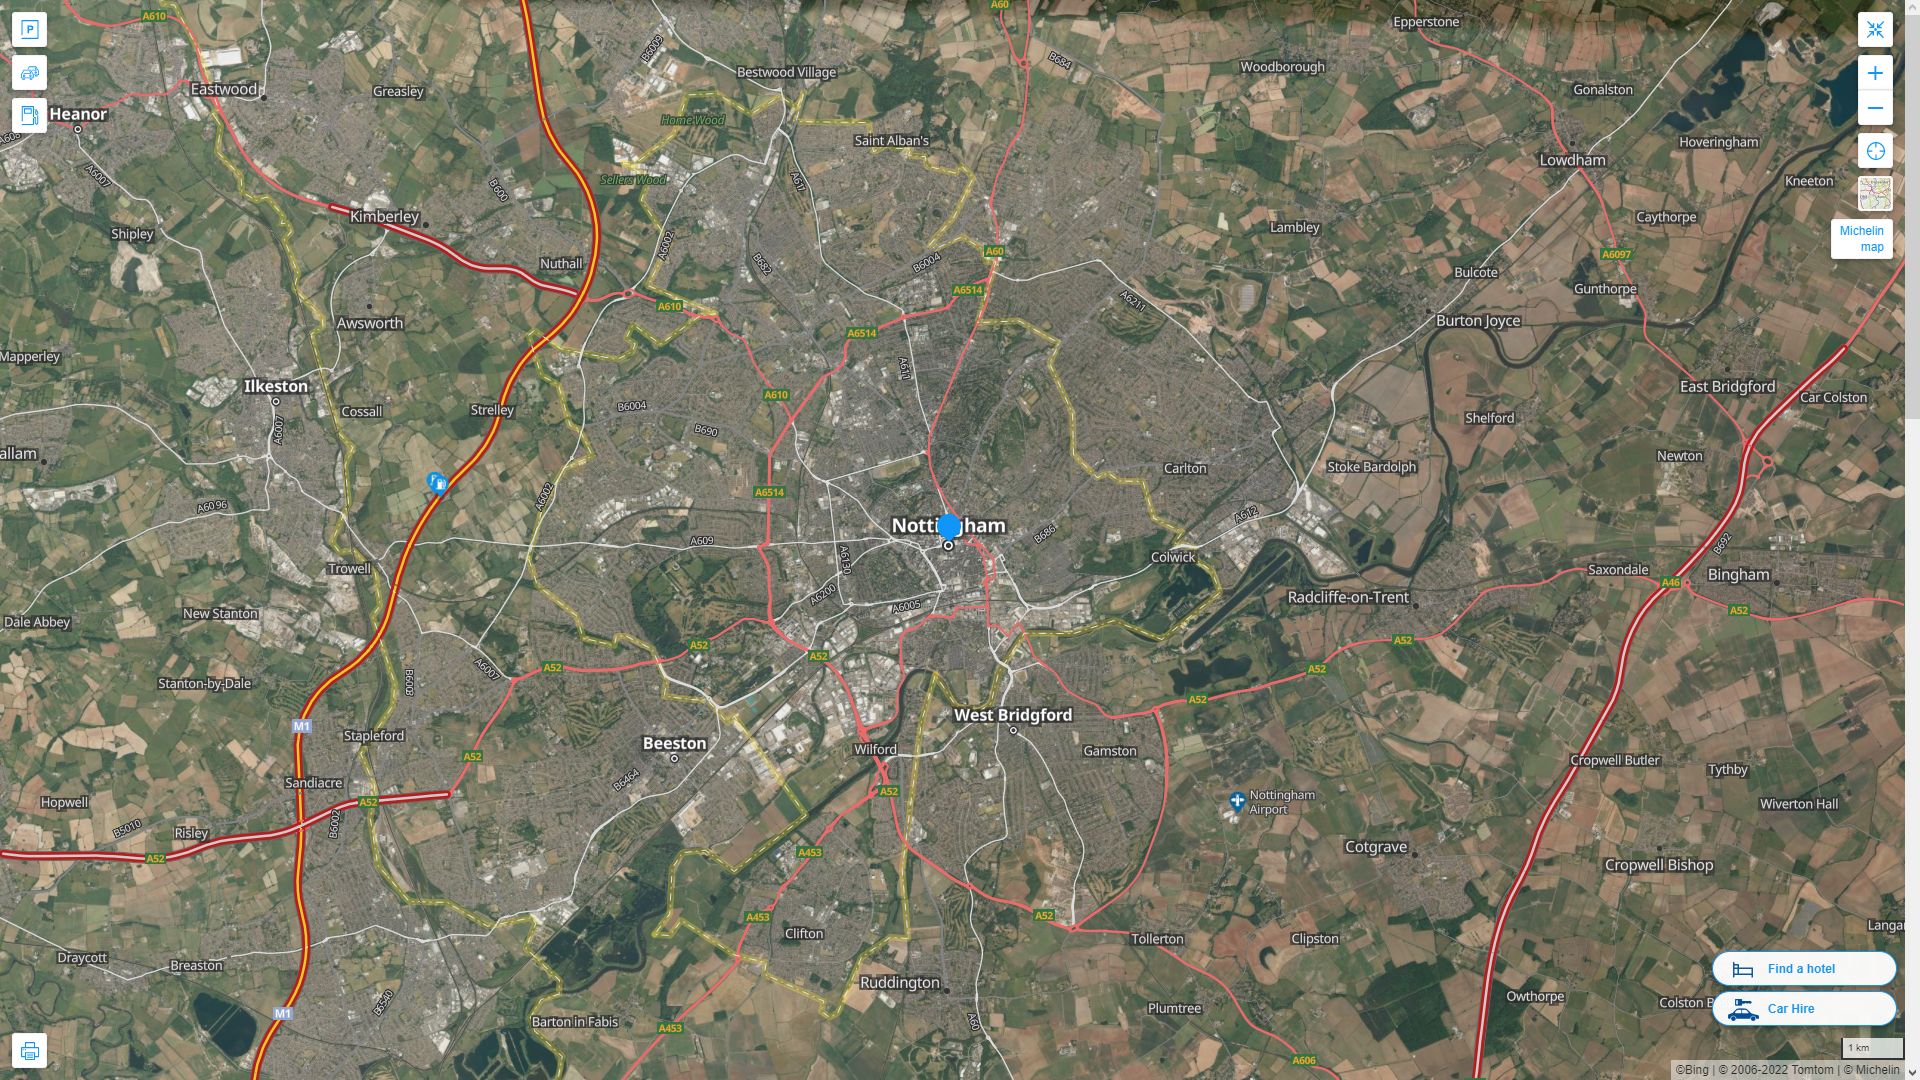 Nottingham Royaume Uni Autoroute et carte routiere avec vue satellite